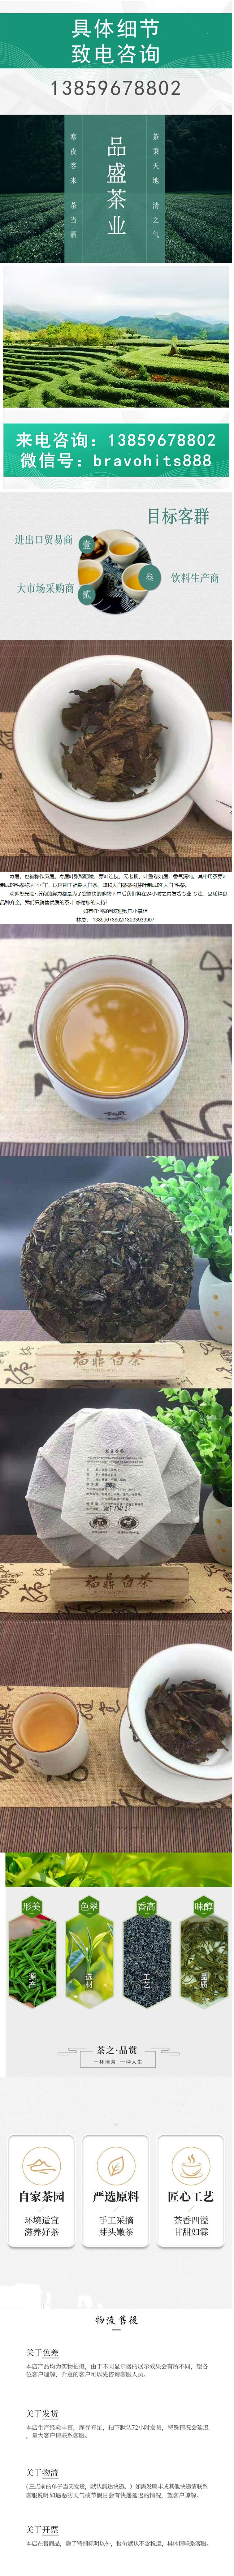 蜜兰香碳焙浓香型白茶寿眉散茶茶叶大量采购.jpg